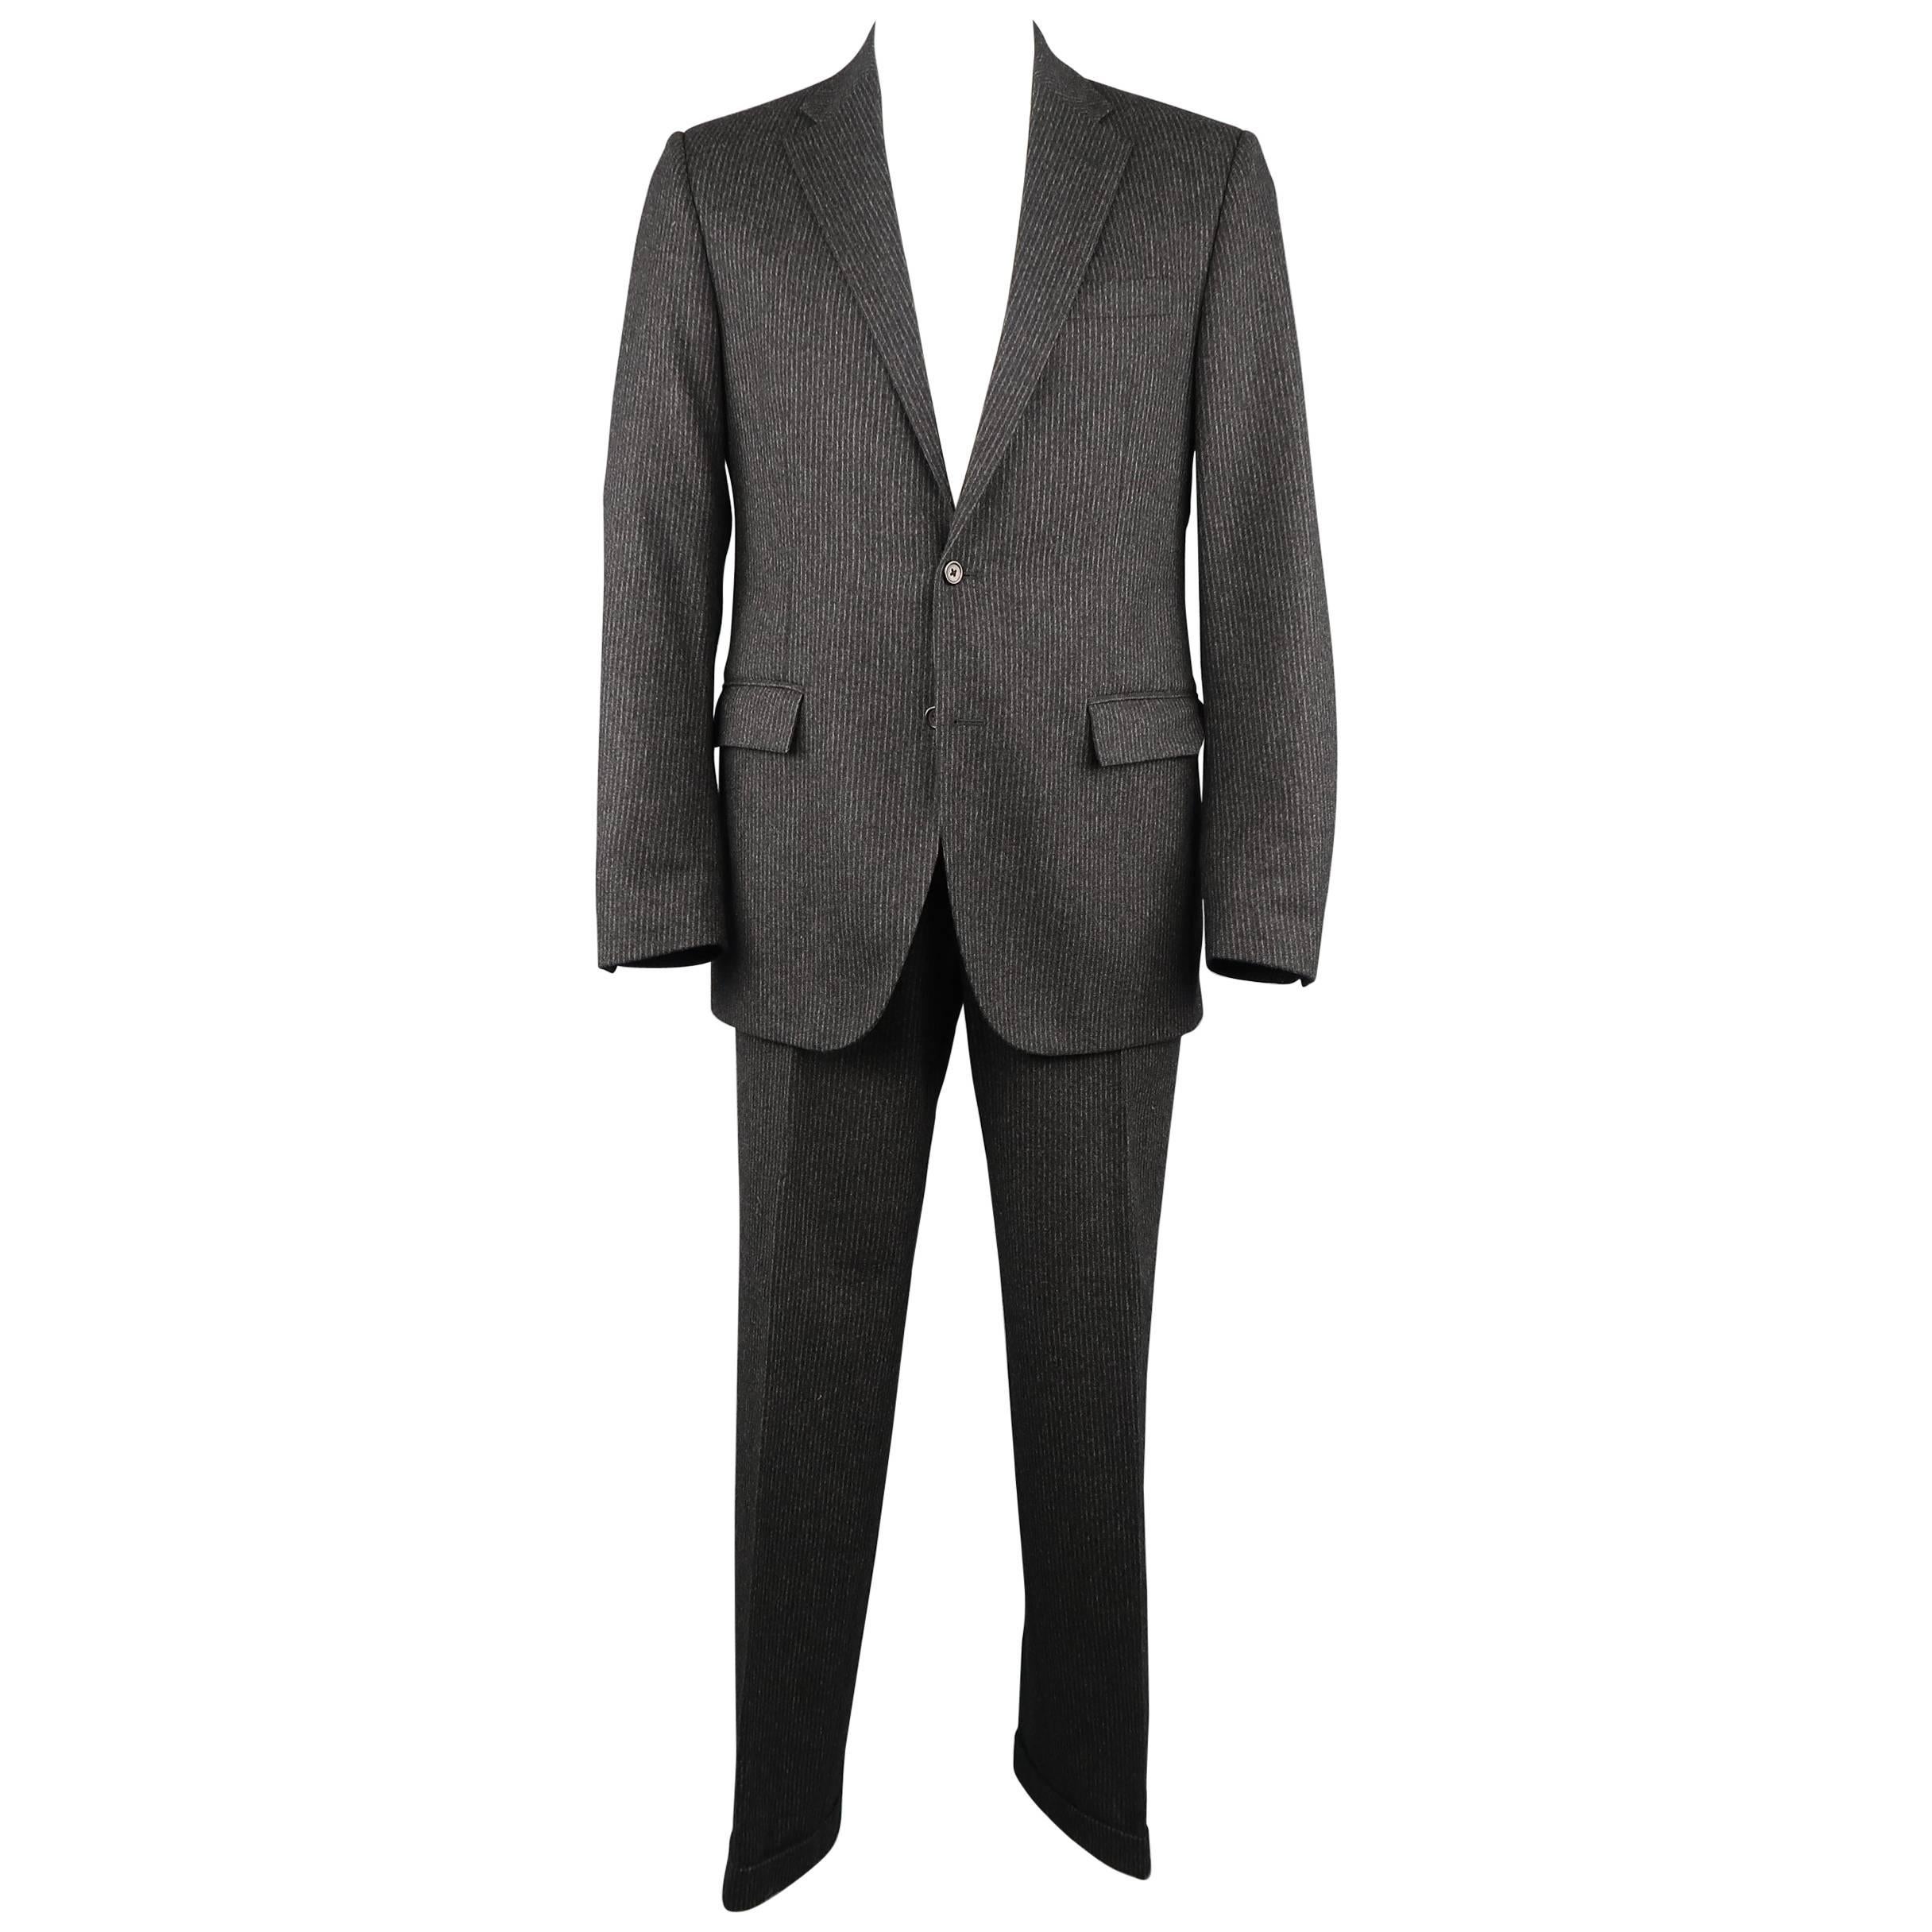 Ralph Lauren Men's Charcoal Pinstripe Wool Cashmere Notch Lapel Suit